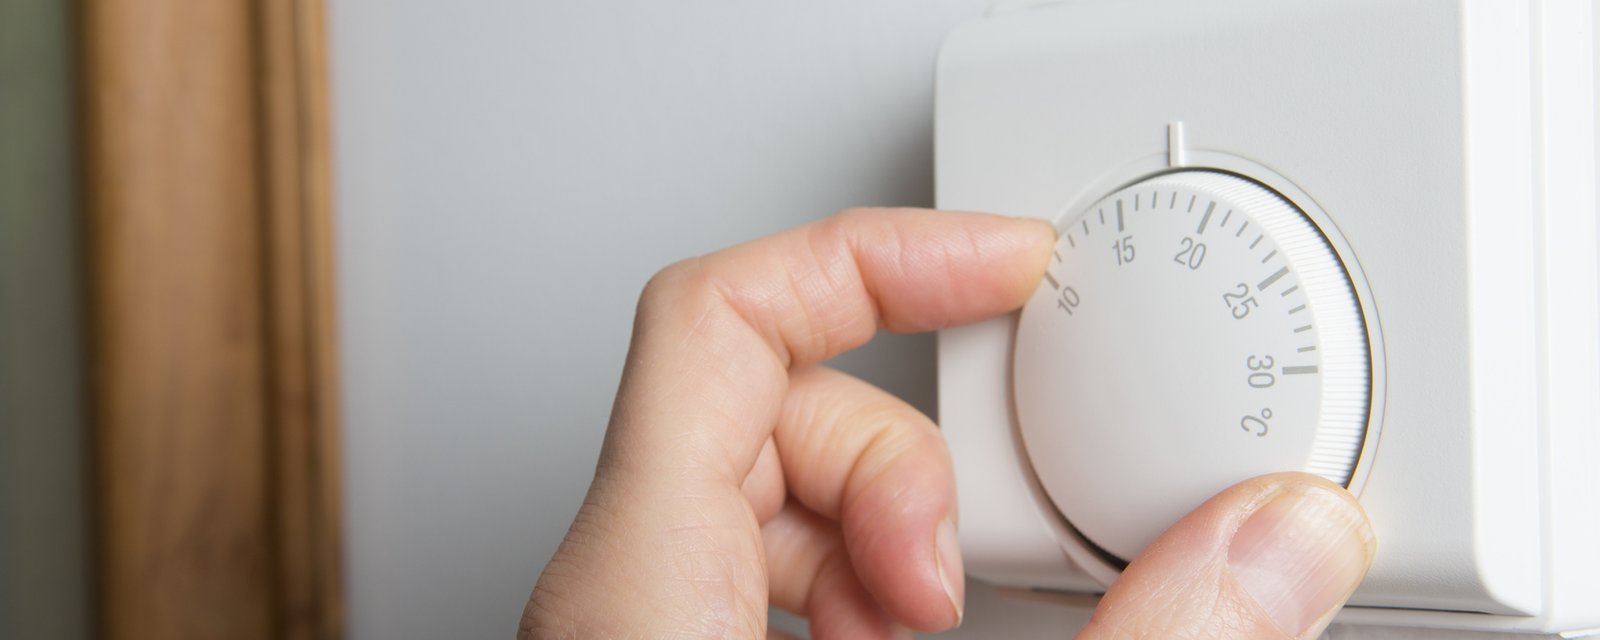 Une mère de famille laisse une note hilarante sur le thermostat et toute la famille retient enfin la leçon!